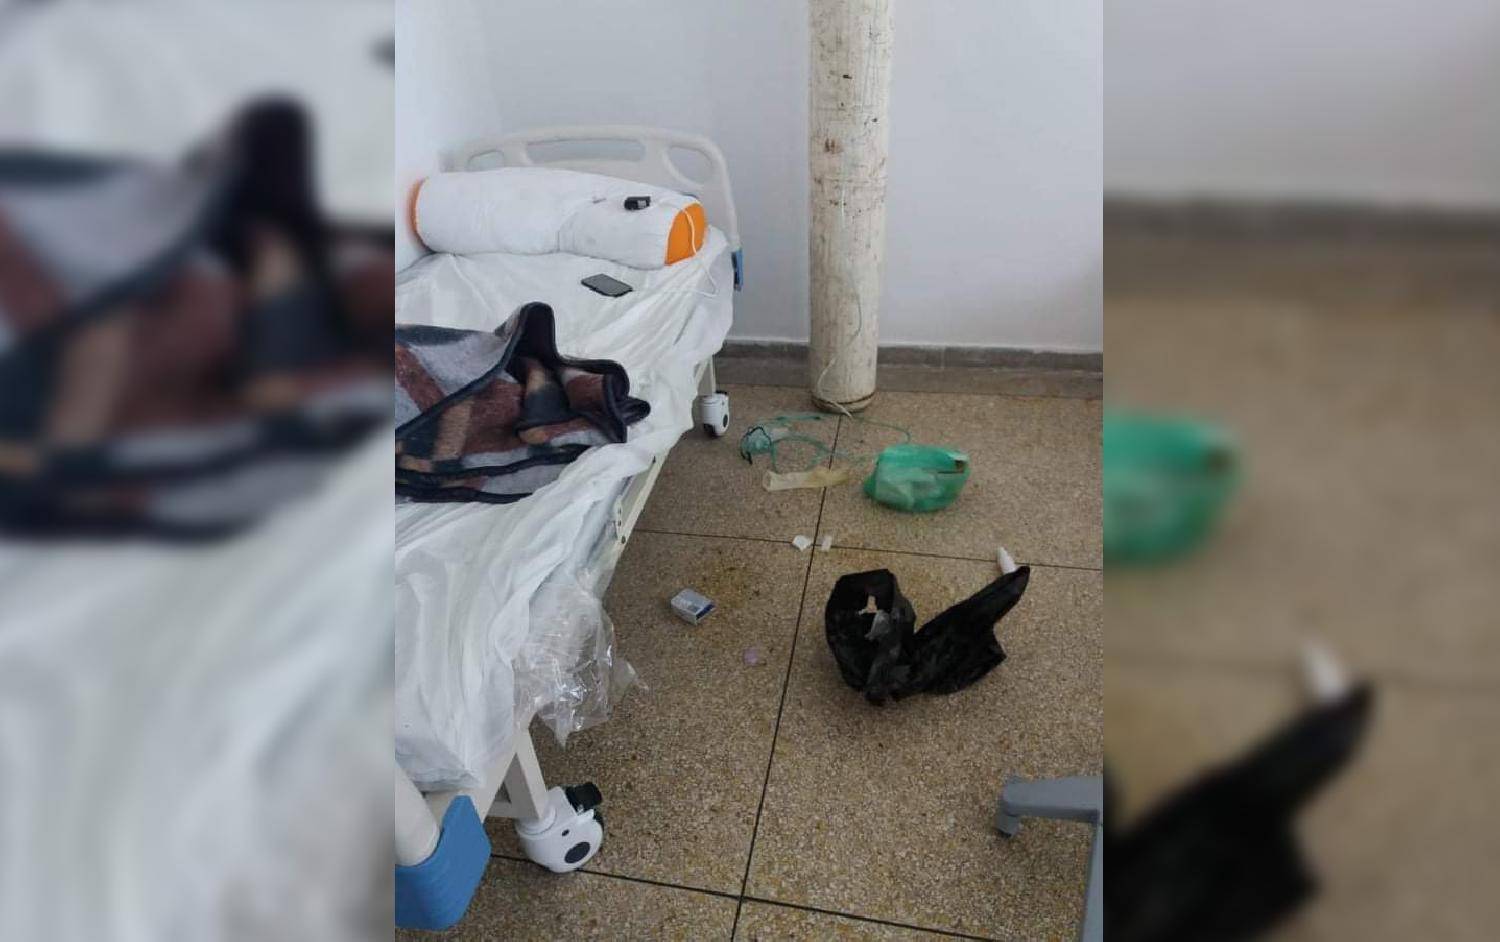 الشرطة القضائية تباشر إجراءات التحقيق في قضية وفاة يوسف لشگر داخل المستشفى الإقليمي بالصويرة